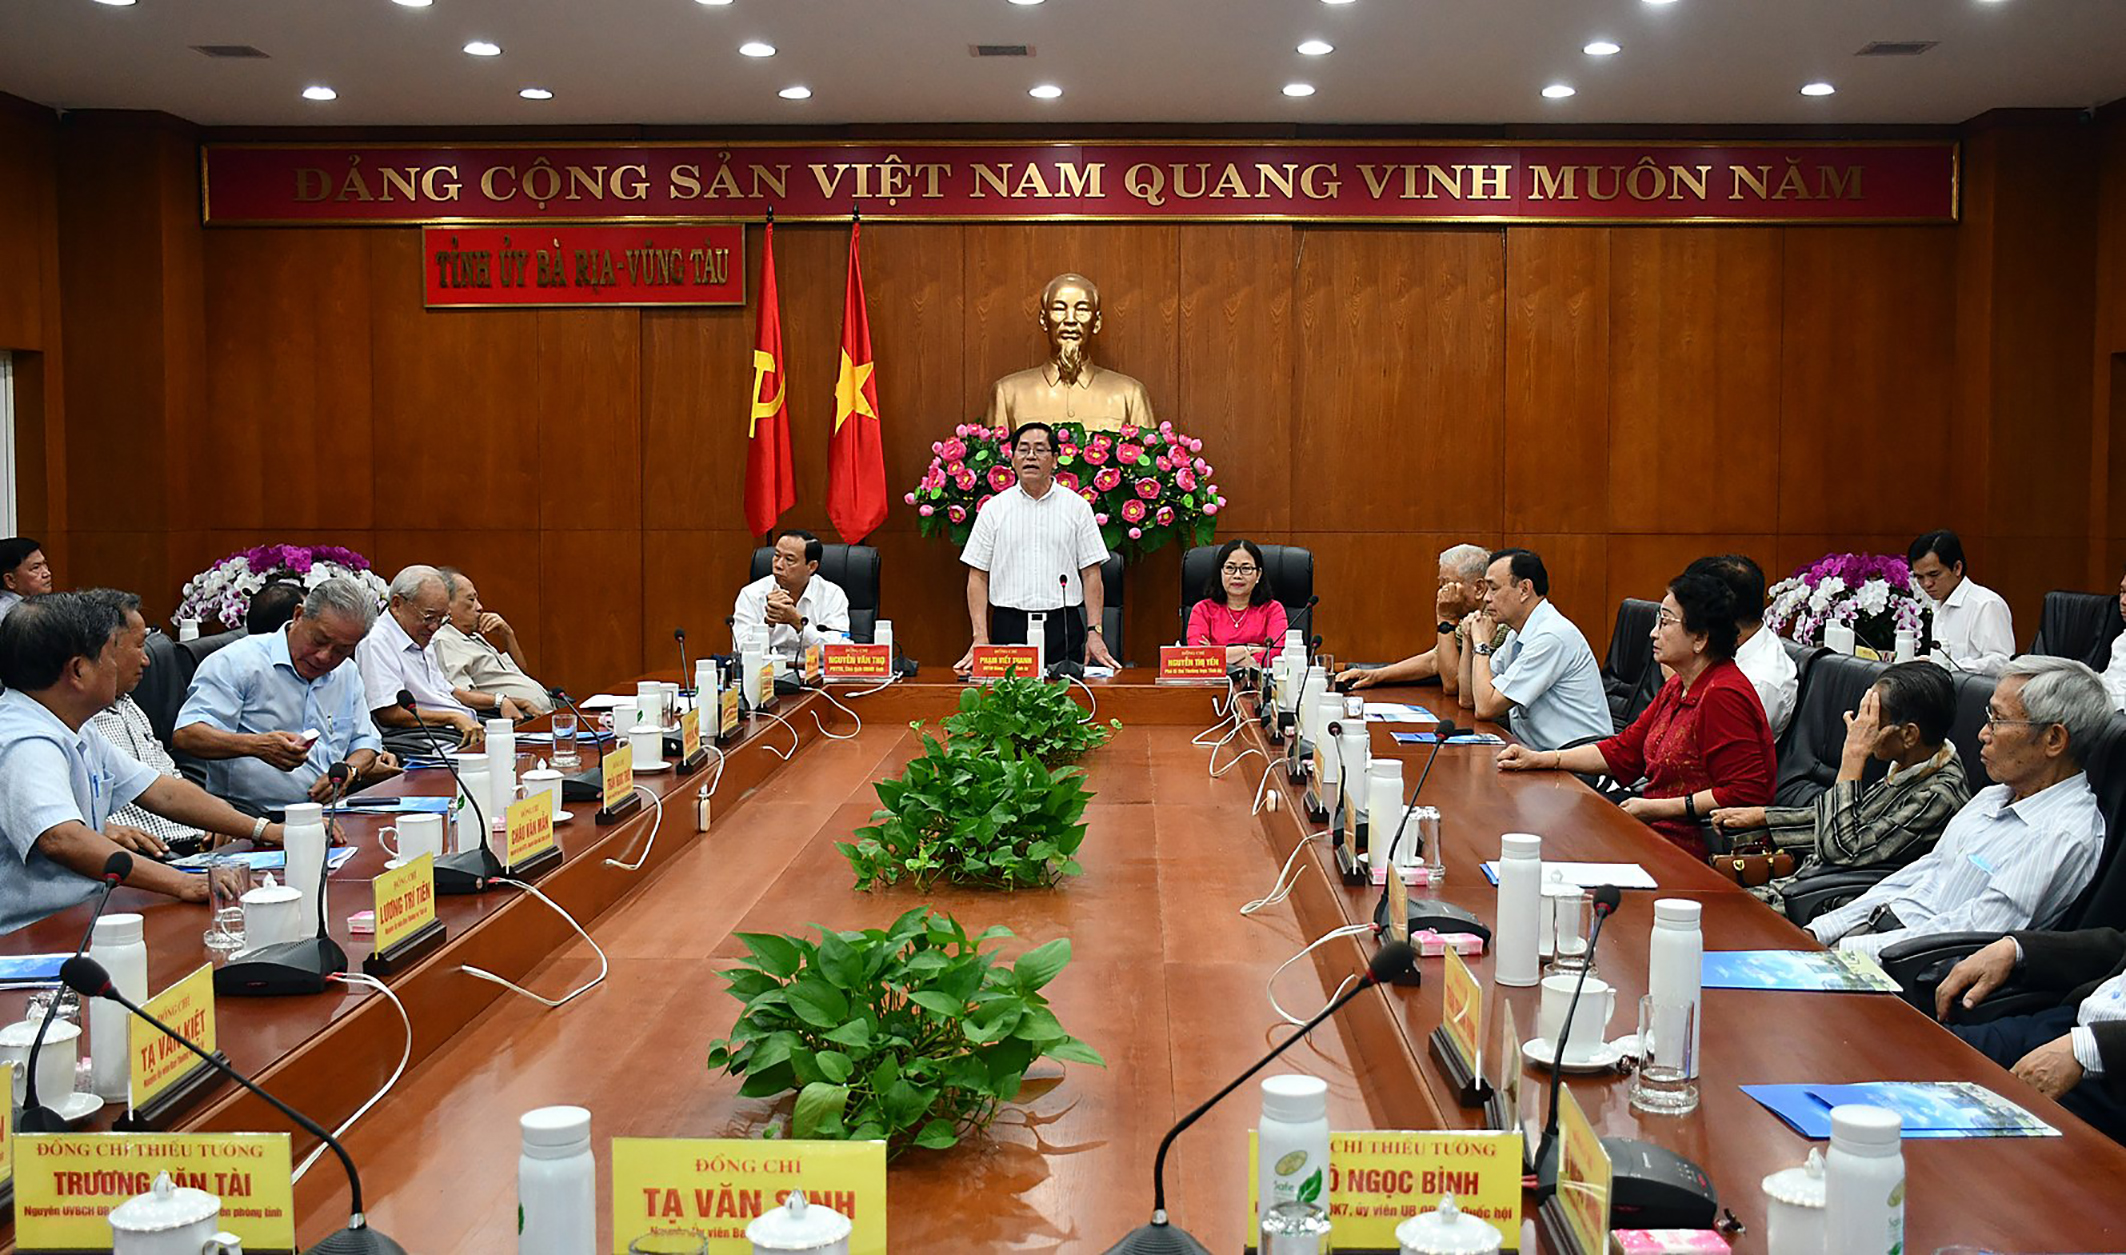 Ông Phạm Viết Thanh, Ủy viên Trung ương Đảng, Bí thư Tỉnh ủy, Chủ tịch HĐND tỉnh phát biểu tiếp thu những góp ý tâm huyết của các vị nguyên lãnh đạo tỉnh với sự phát triển kinh tế - xã hội của tỉnh tại buổi gặp gỡ nguyên lãnh đạo tỉnh nhân dịp Tết Nguyên đán Quý Mão 2023.